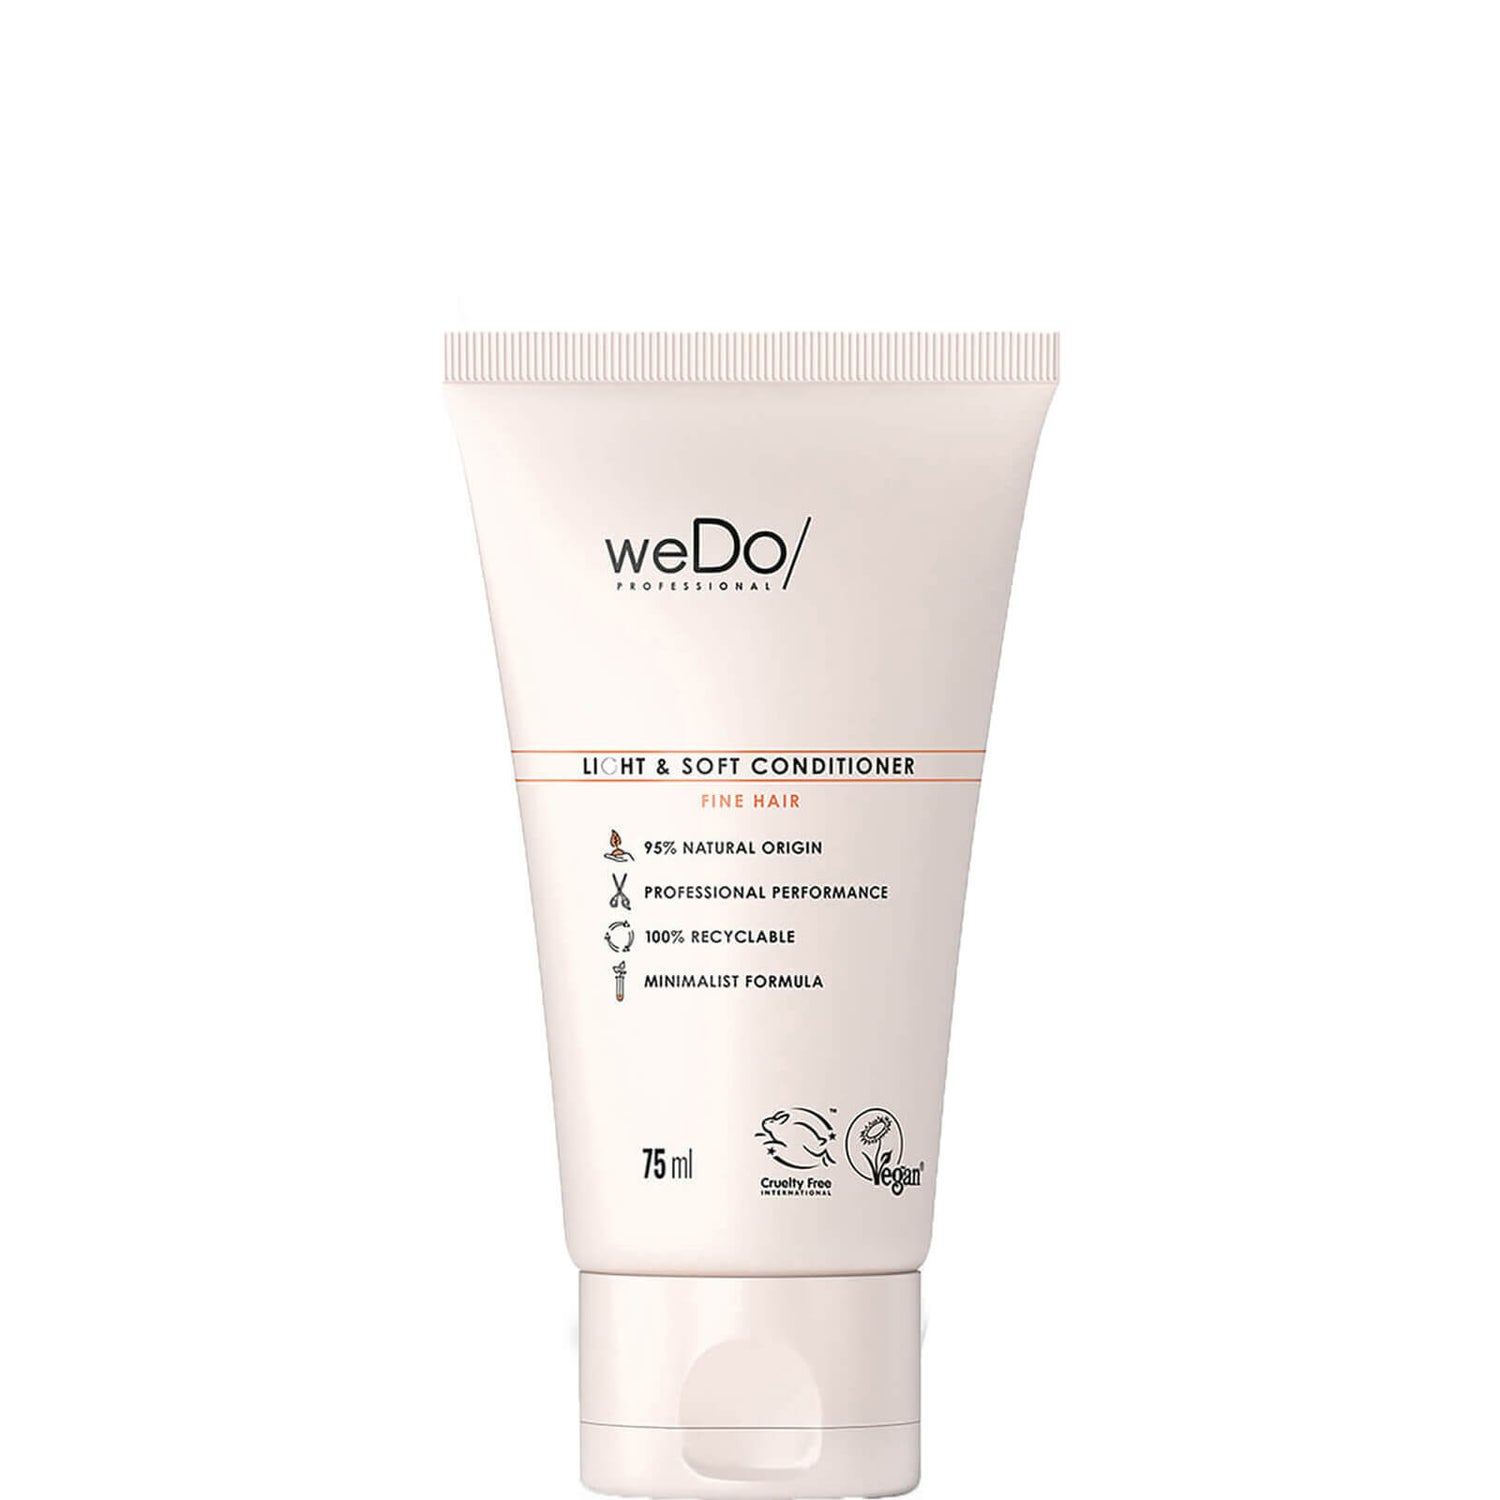 weDo/ Professional Light and Soft Conditioner odżywka do włosów 75 ml